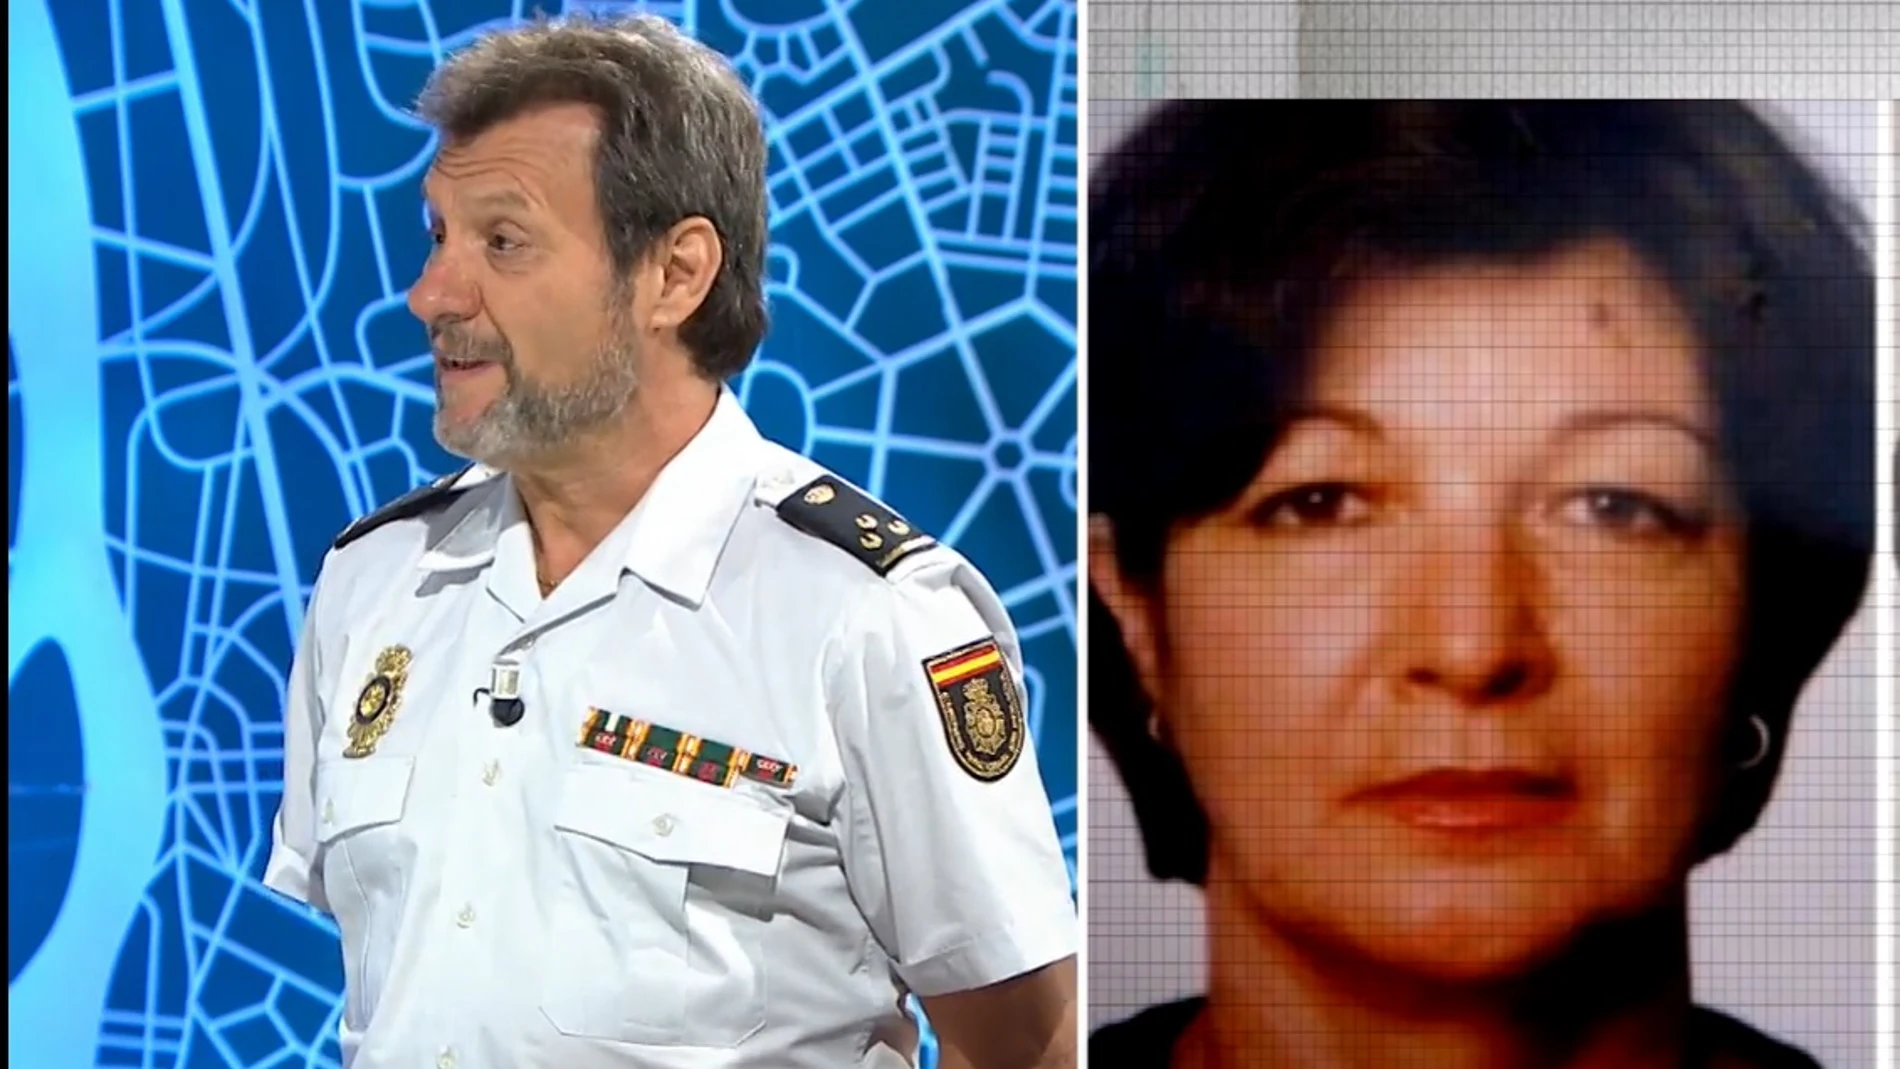 Blanca Mabel, la mujer encontrada en Pola de Siero 25 años después de su desaparición